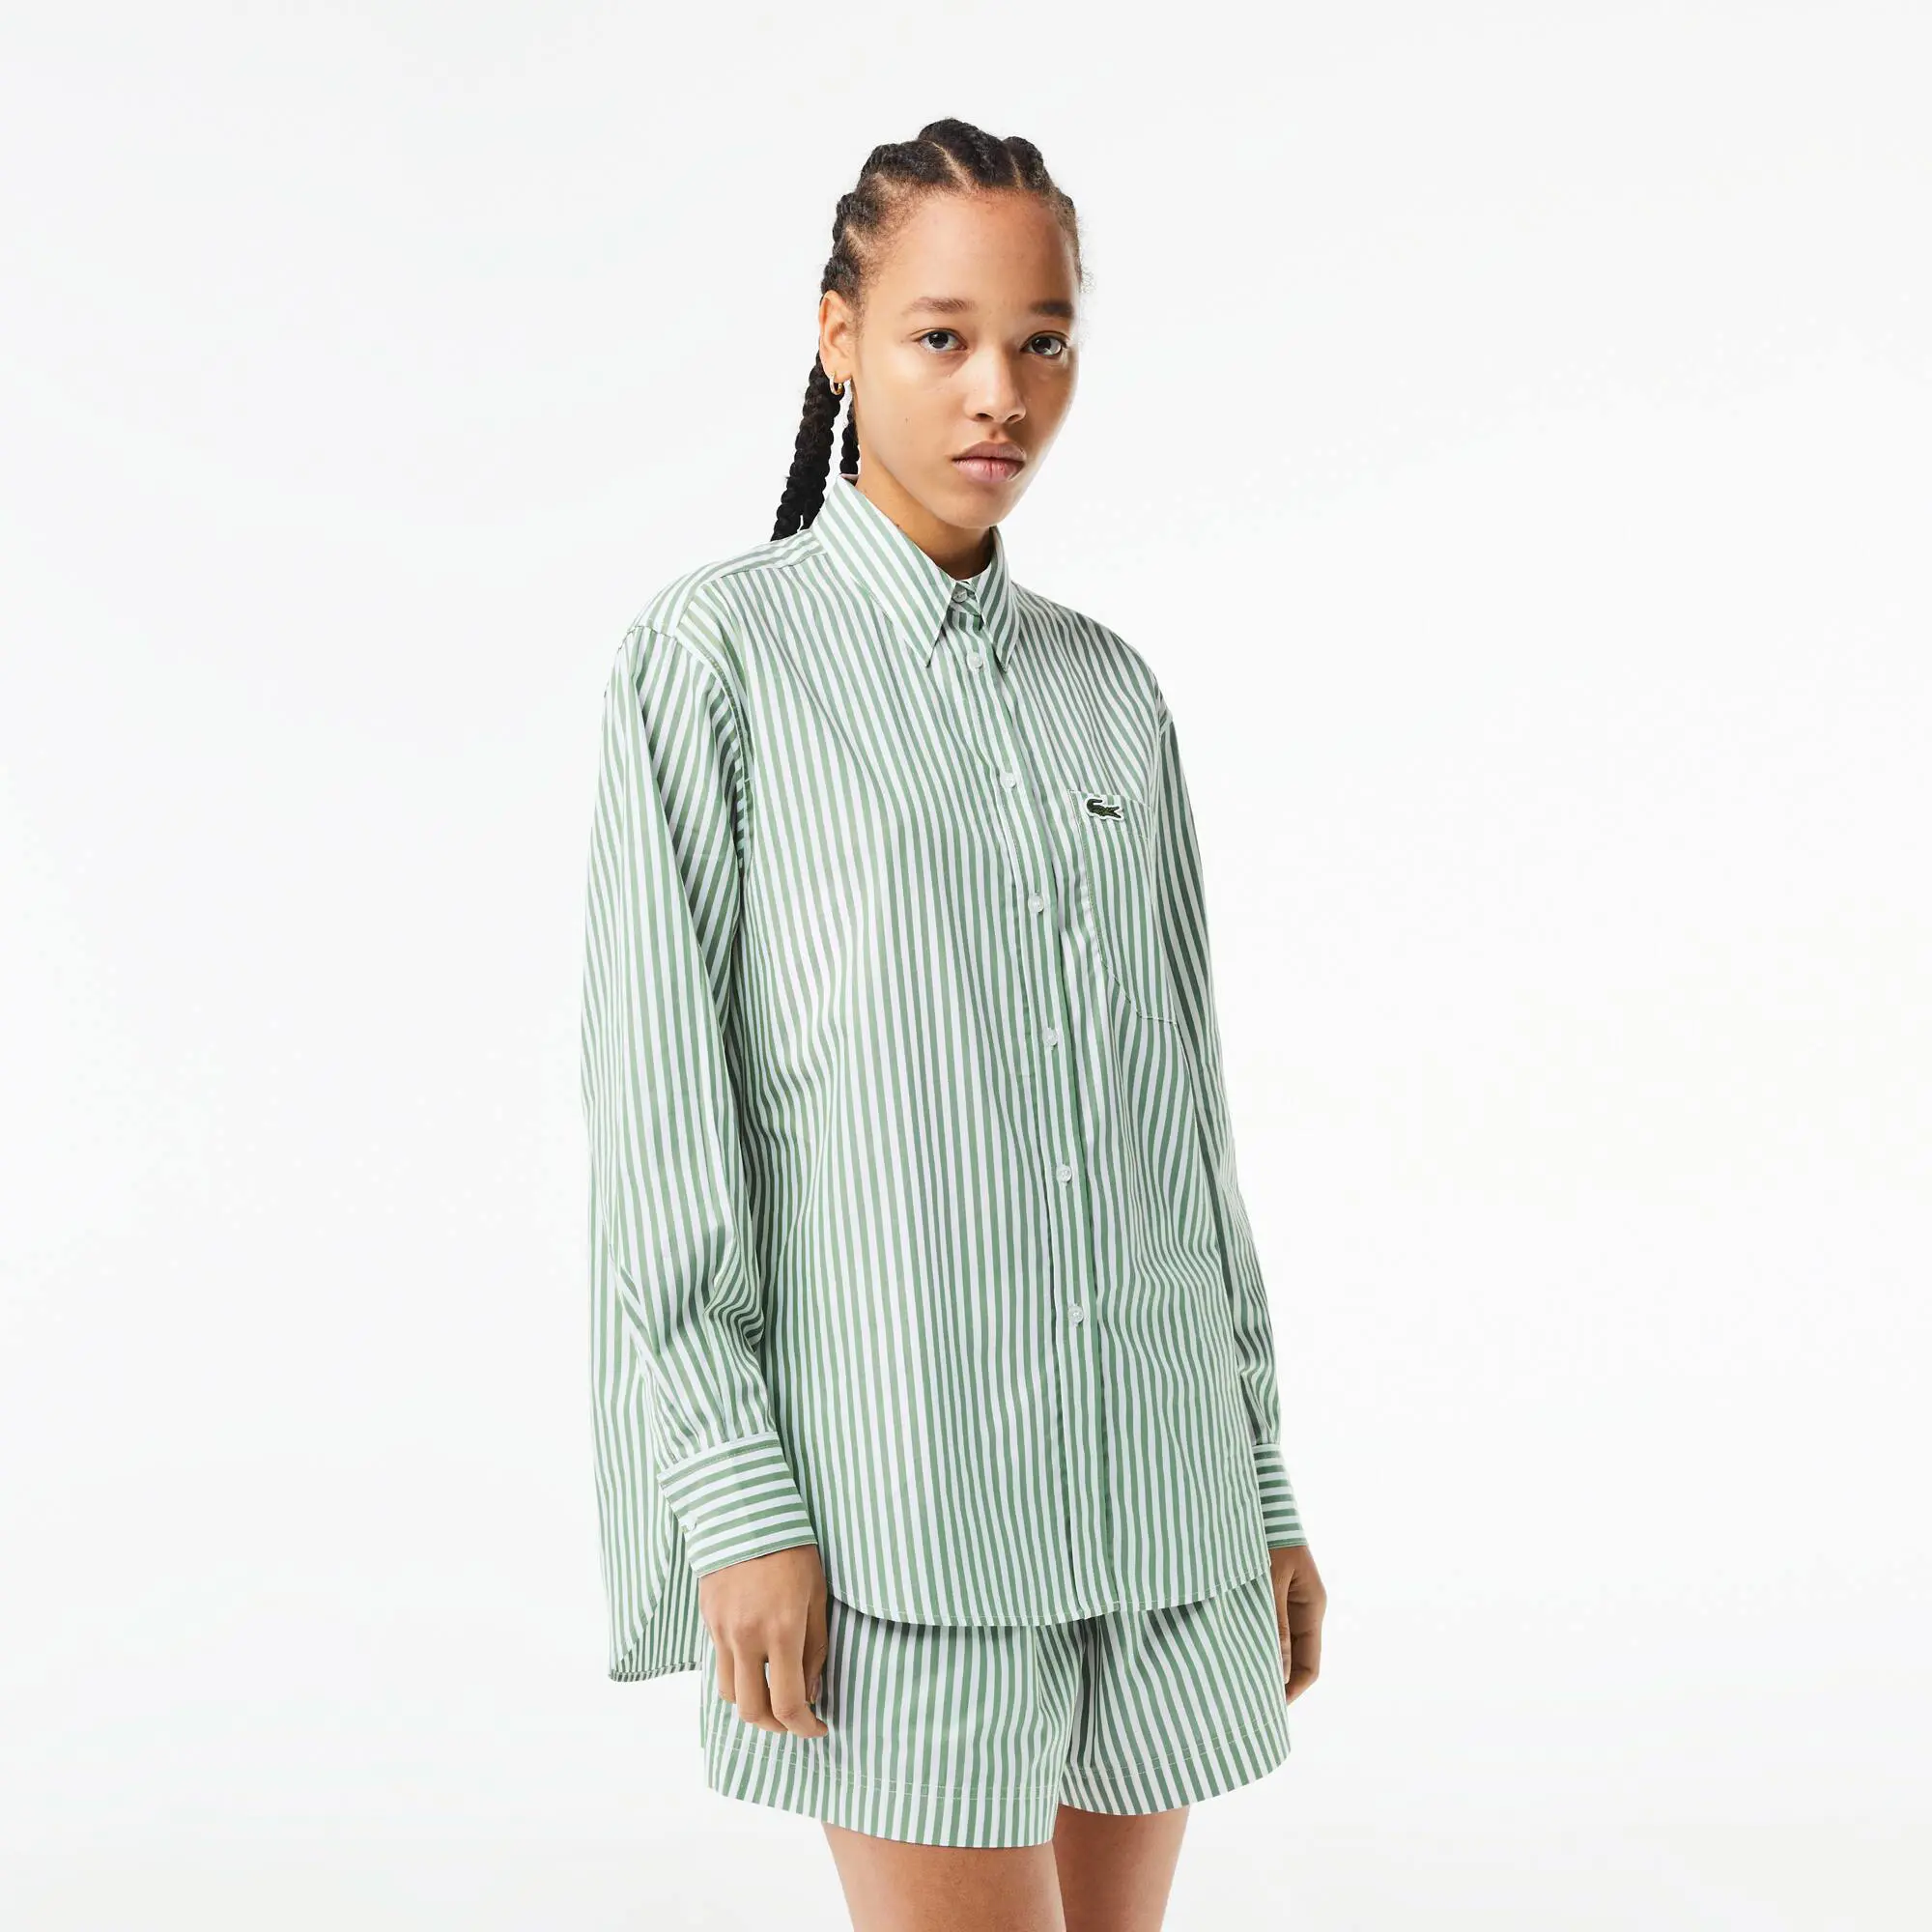 Lacoste Women’s Lacoste Striped Cotton Poplin Shirt. 1